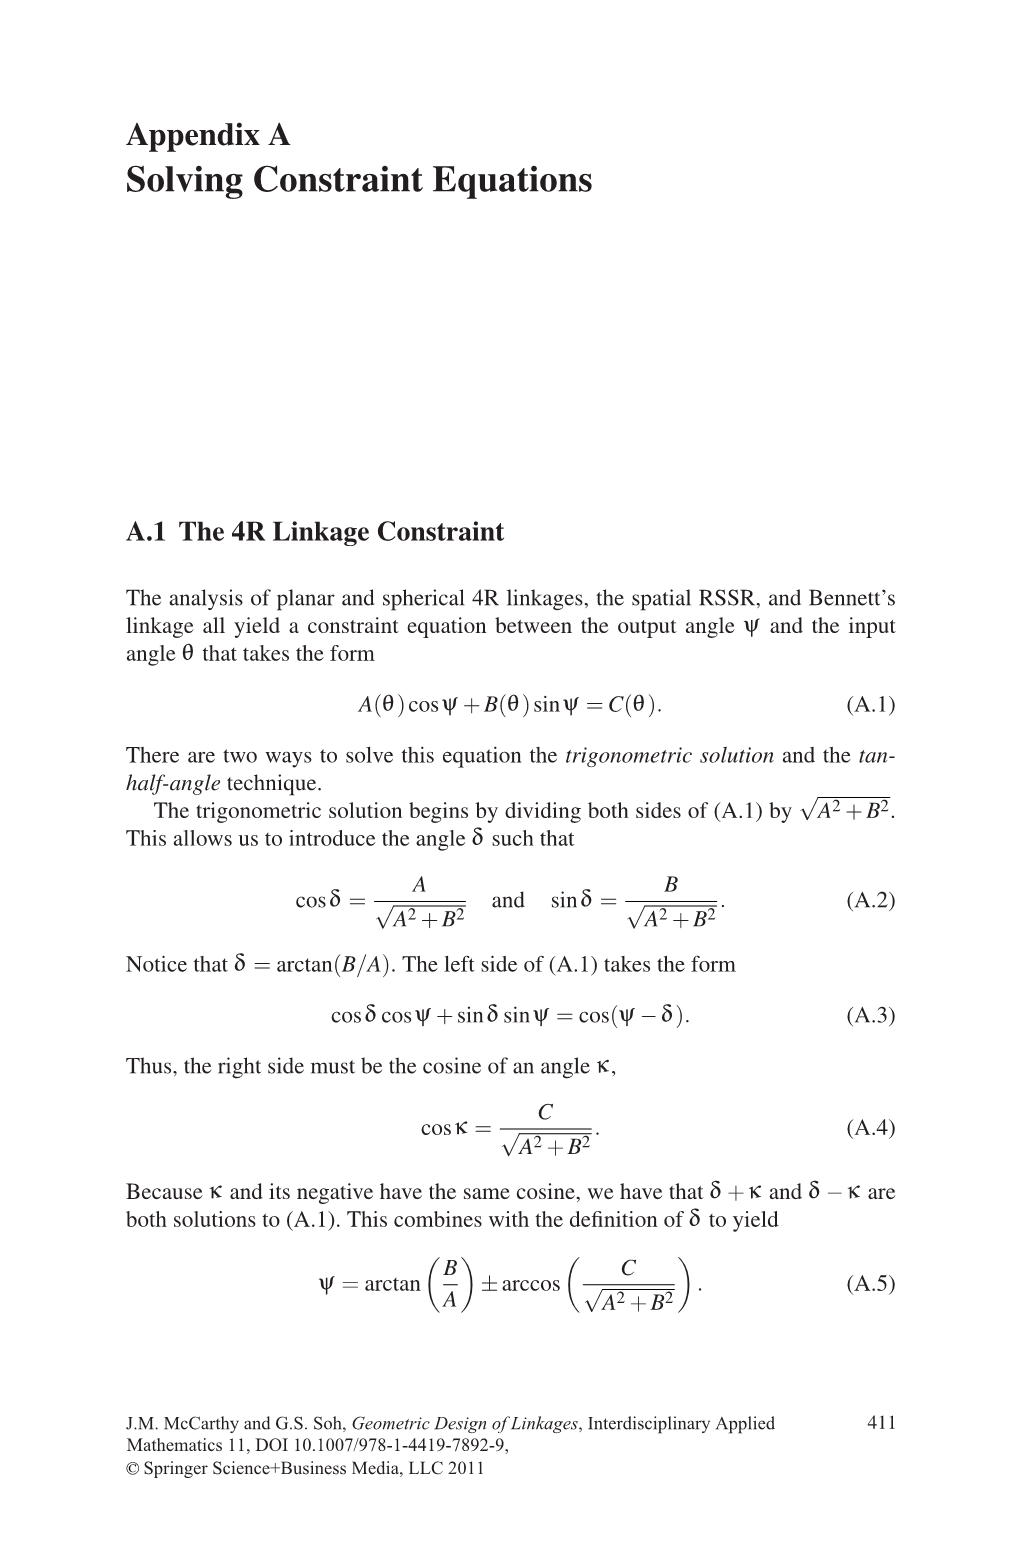 Solving Constraint Equations